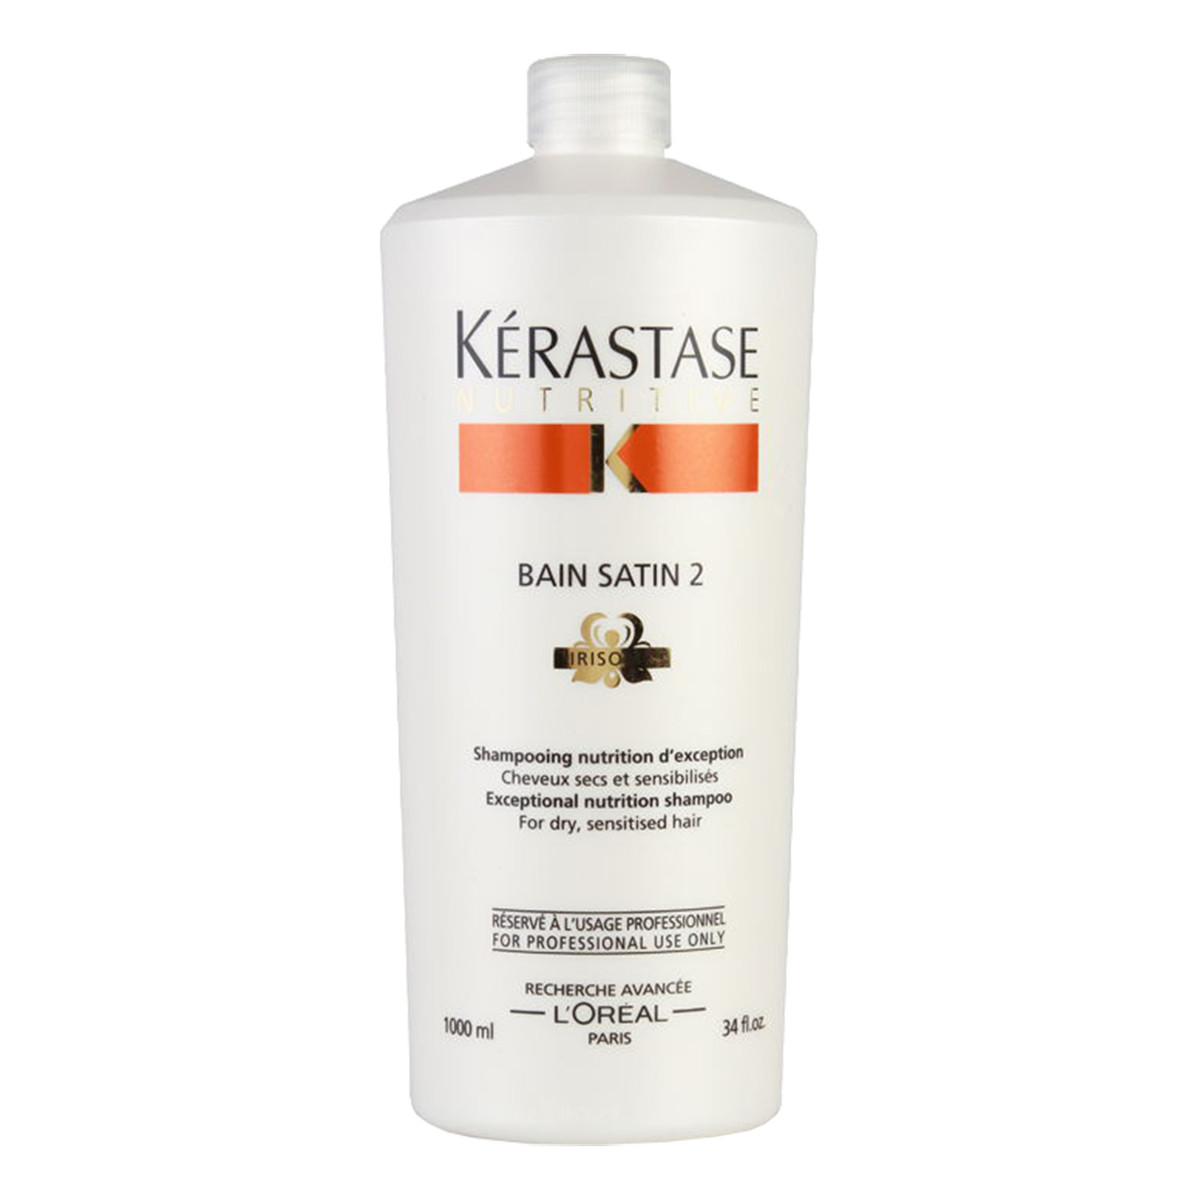 Kerastase Nutritive Bain Satin 2 kąpiel odżywcza do włosów suchych lub uwrażliwionych 1000ml